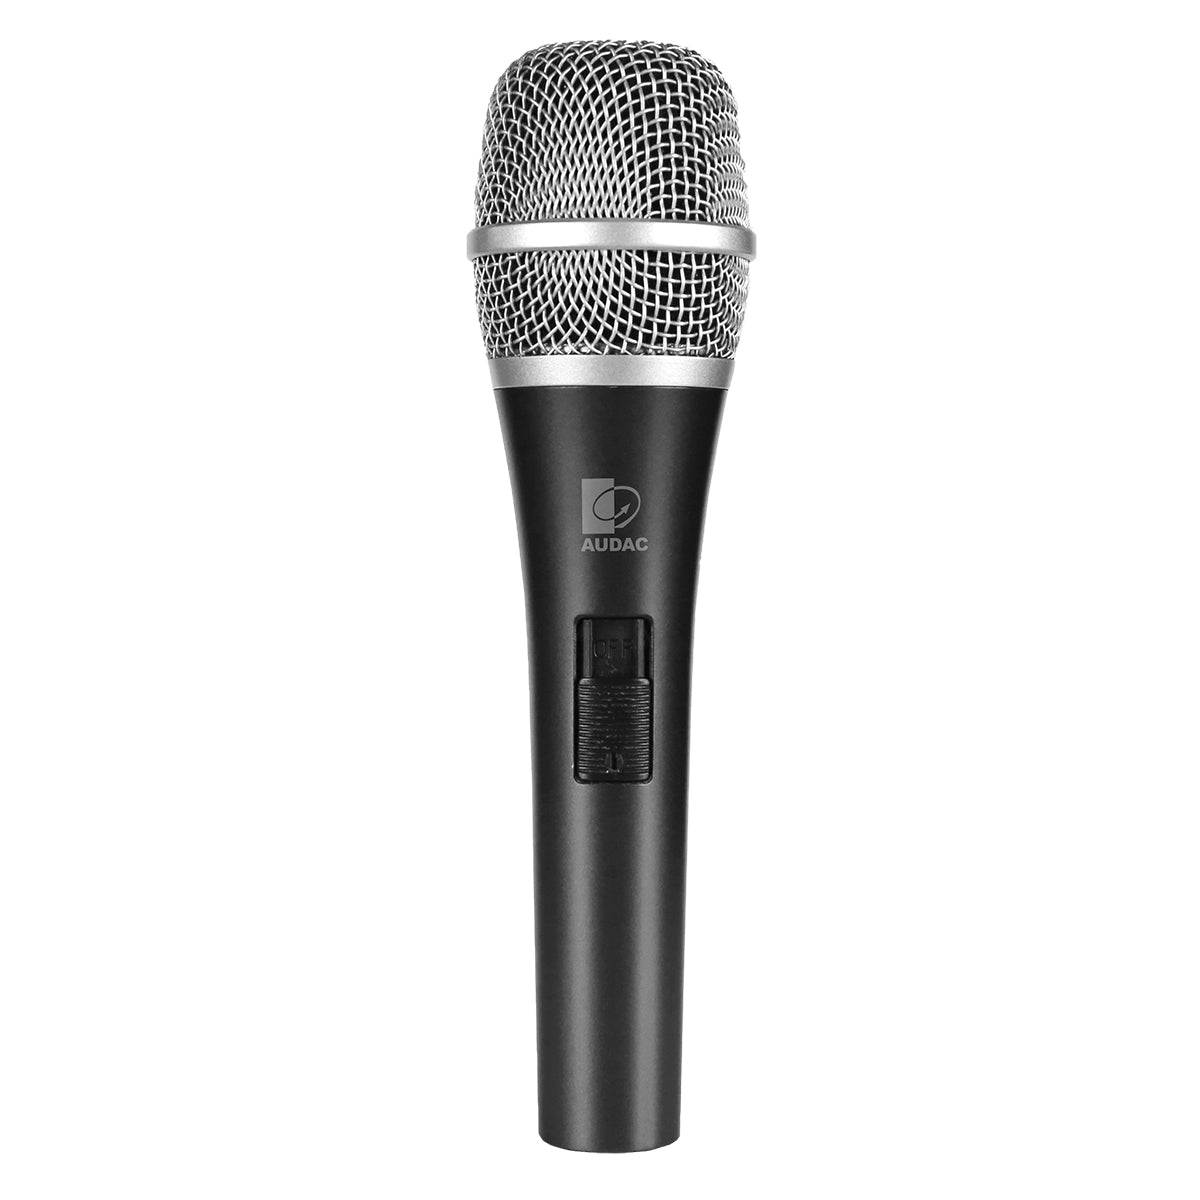 Audac M97 Condenser handheld microphone